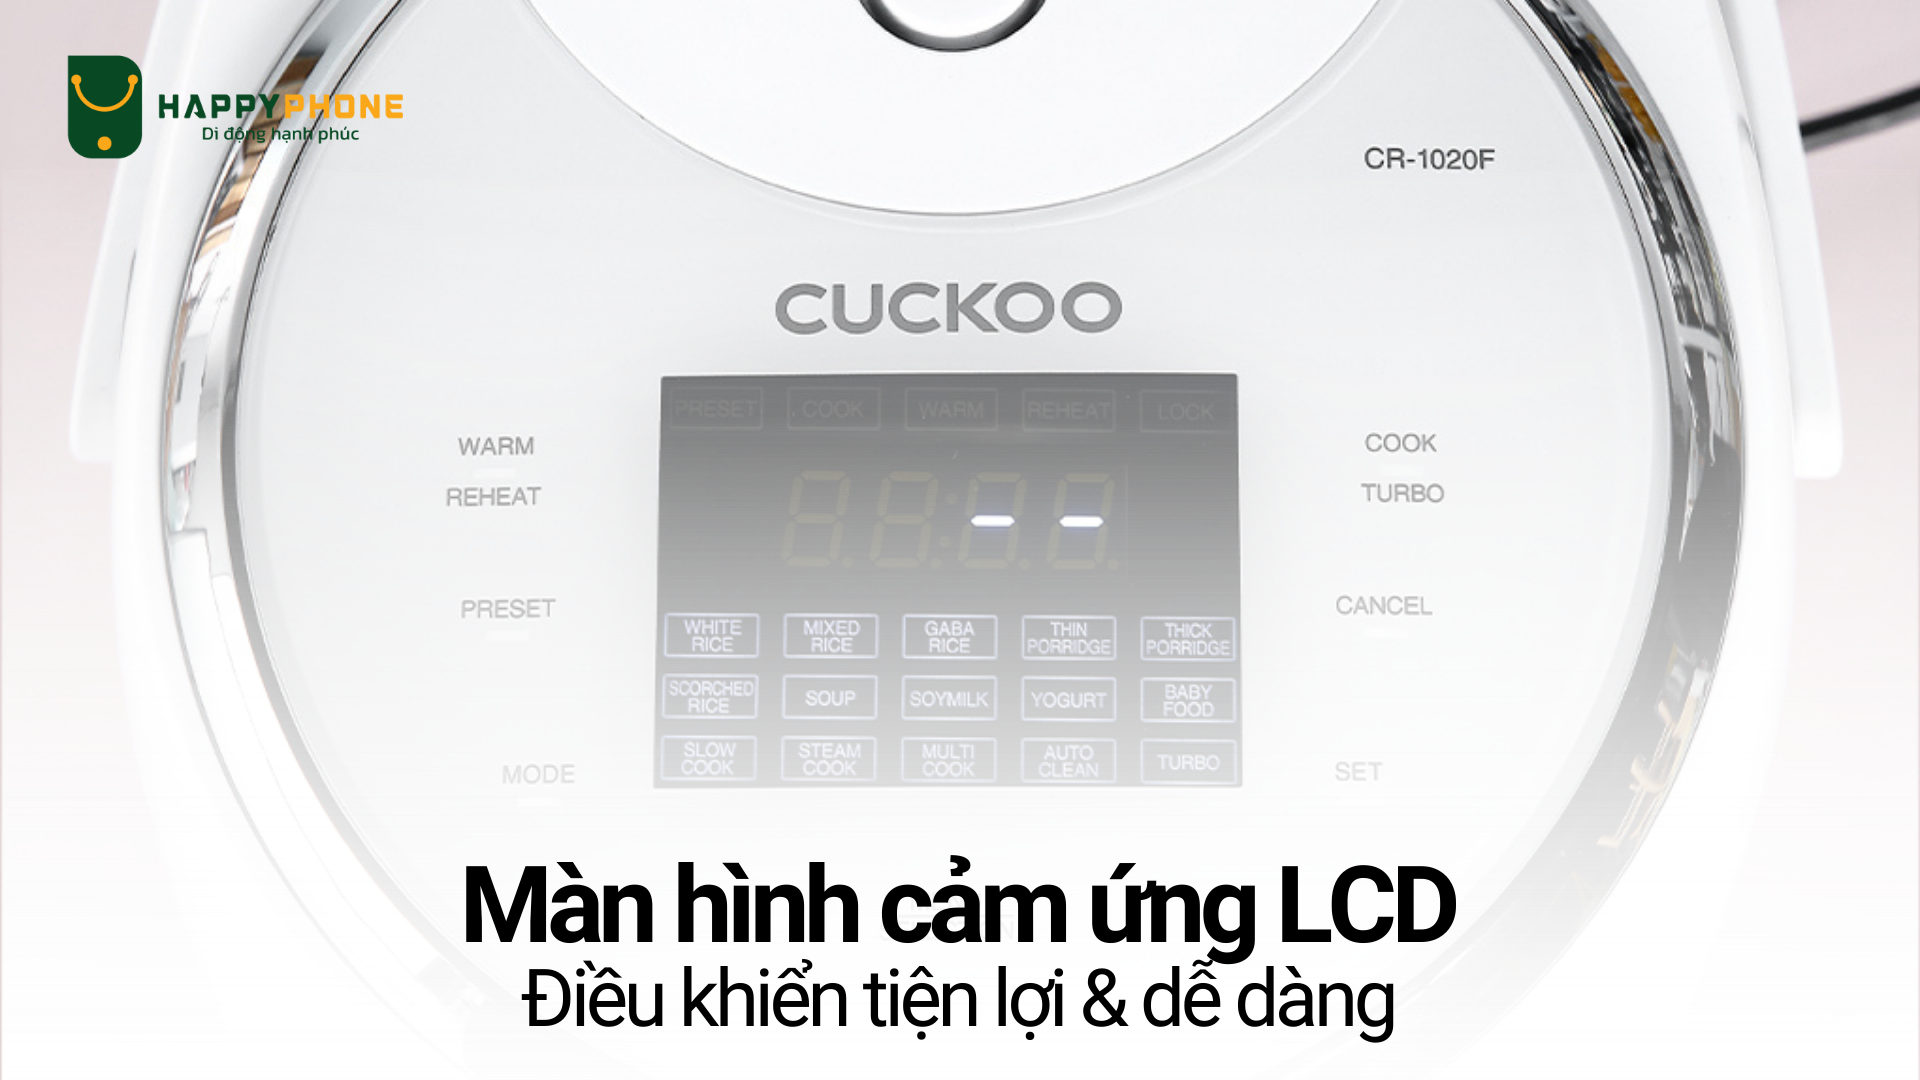 Nồi cơm điện tử Cuckoo 1.8L (CR-1020F) điều khiển thông qua màn hình cảm ứng tiện lợi